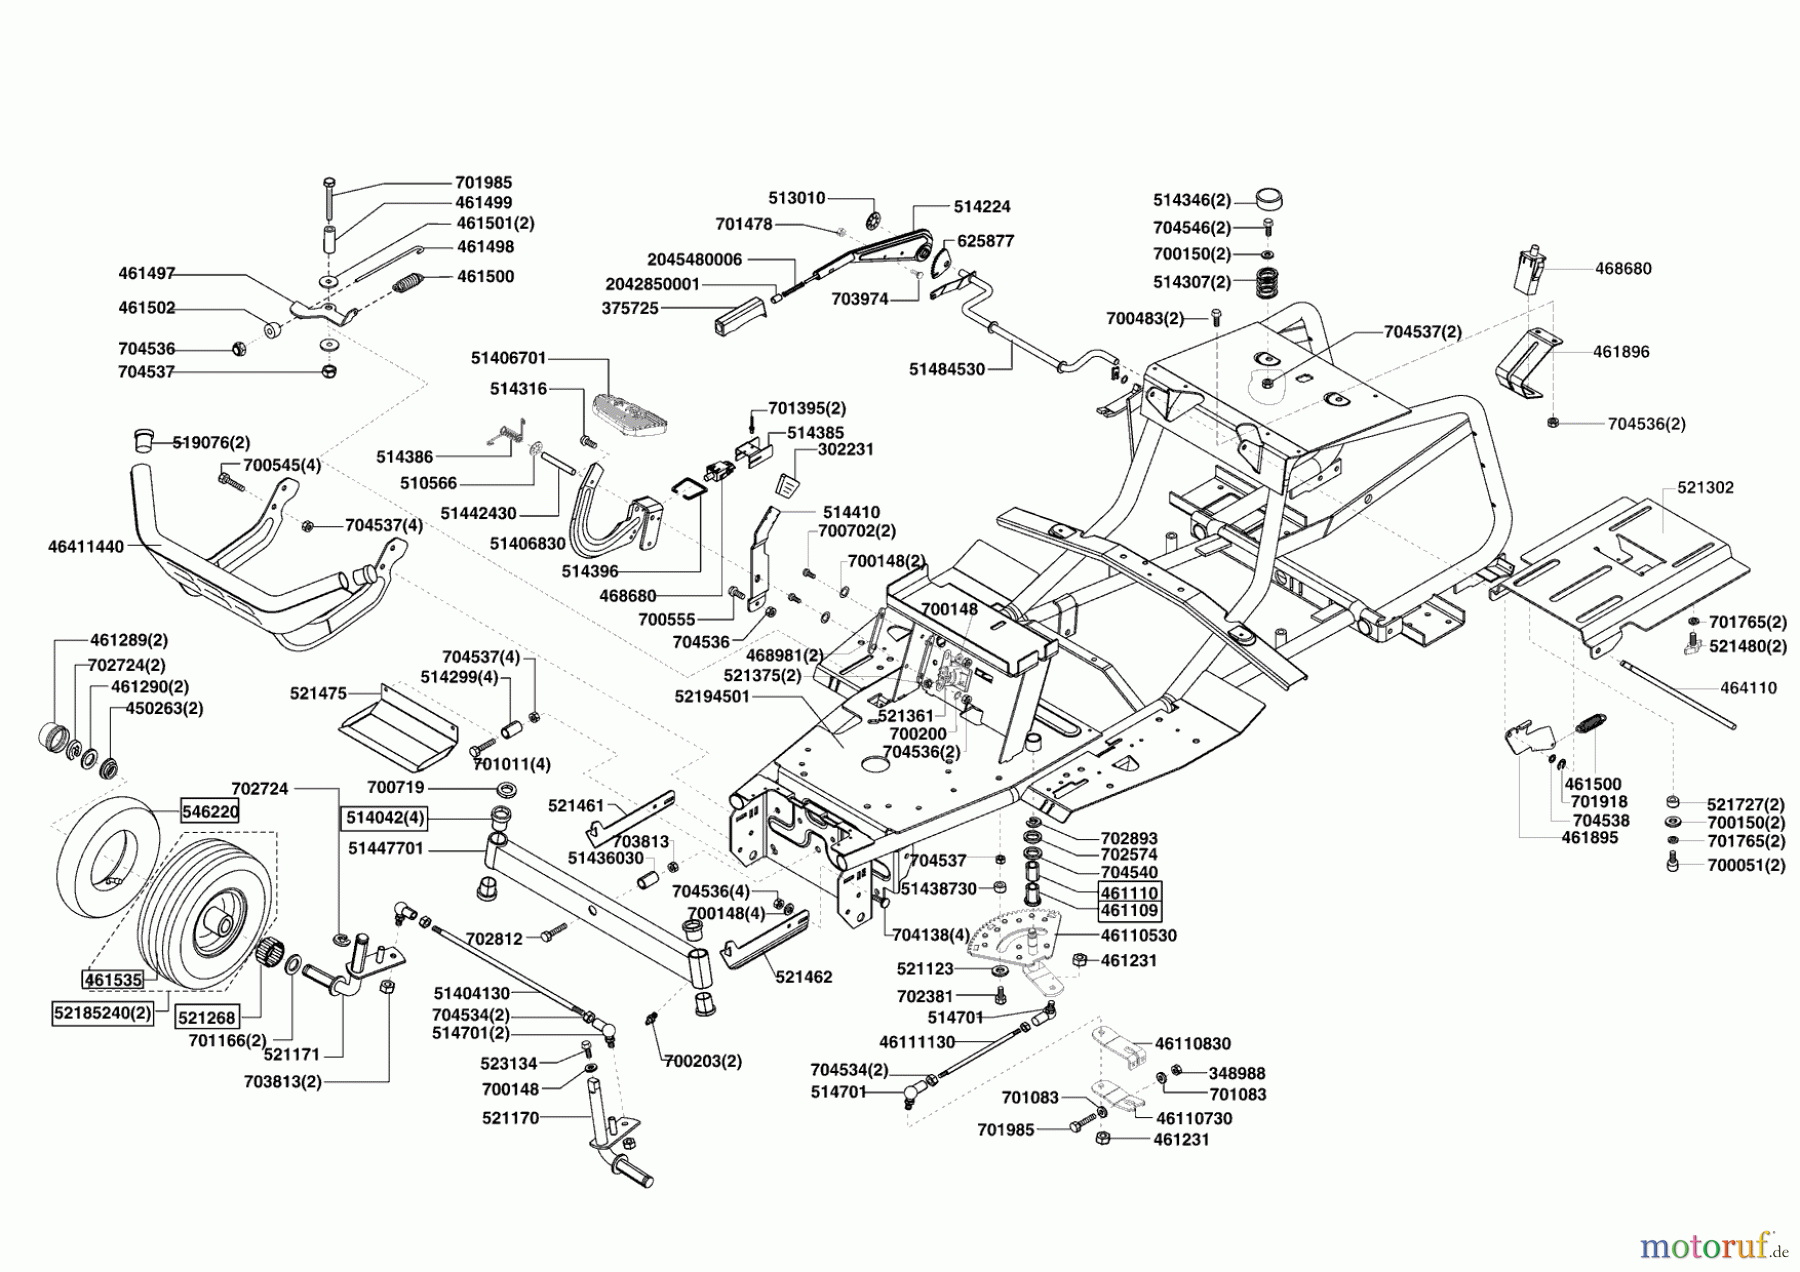  Powerline Gartentechnik Rasentraktor T18-102 HDS ab 11/2009 Seite 2